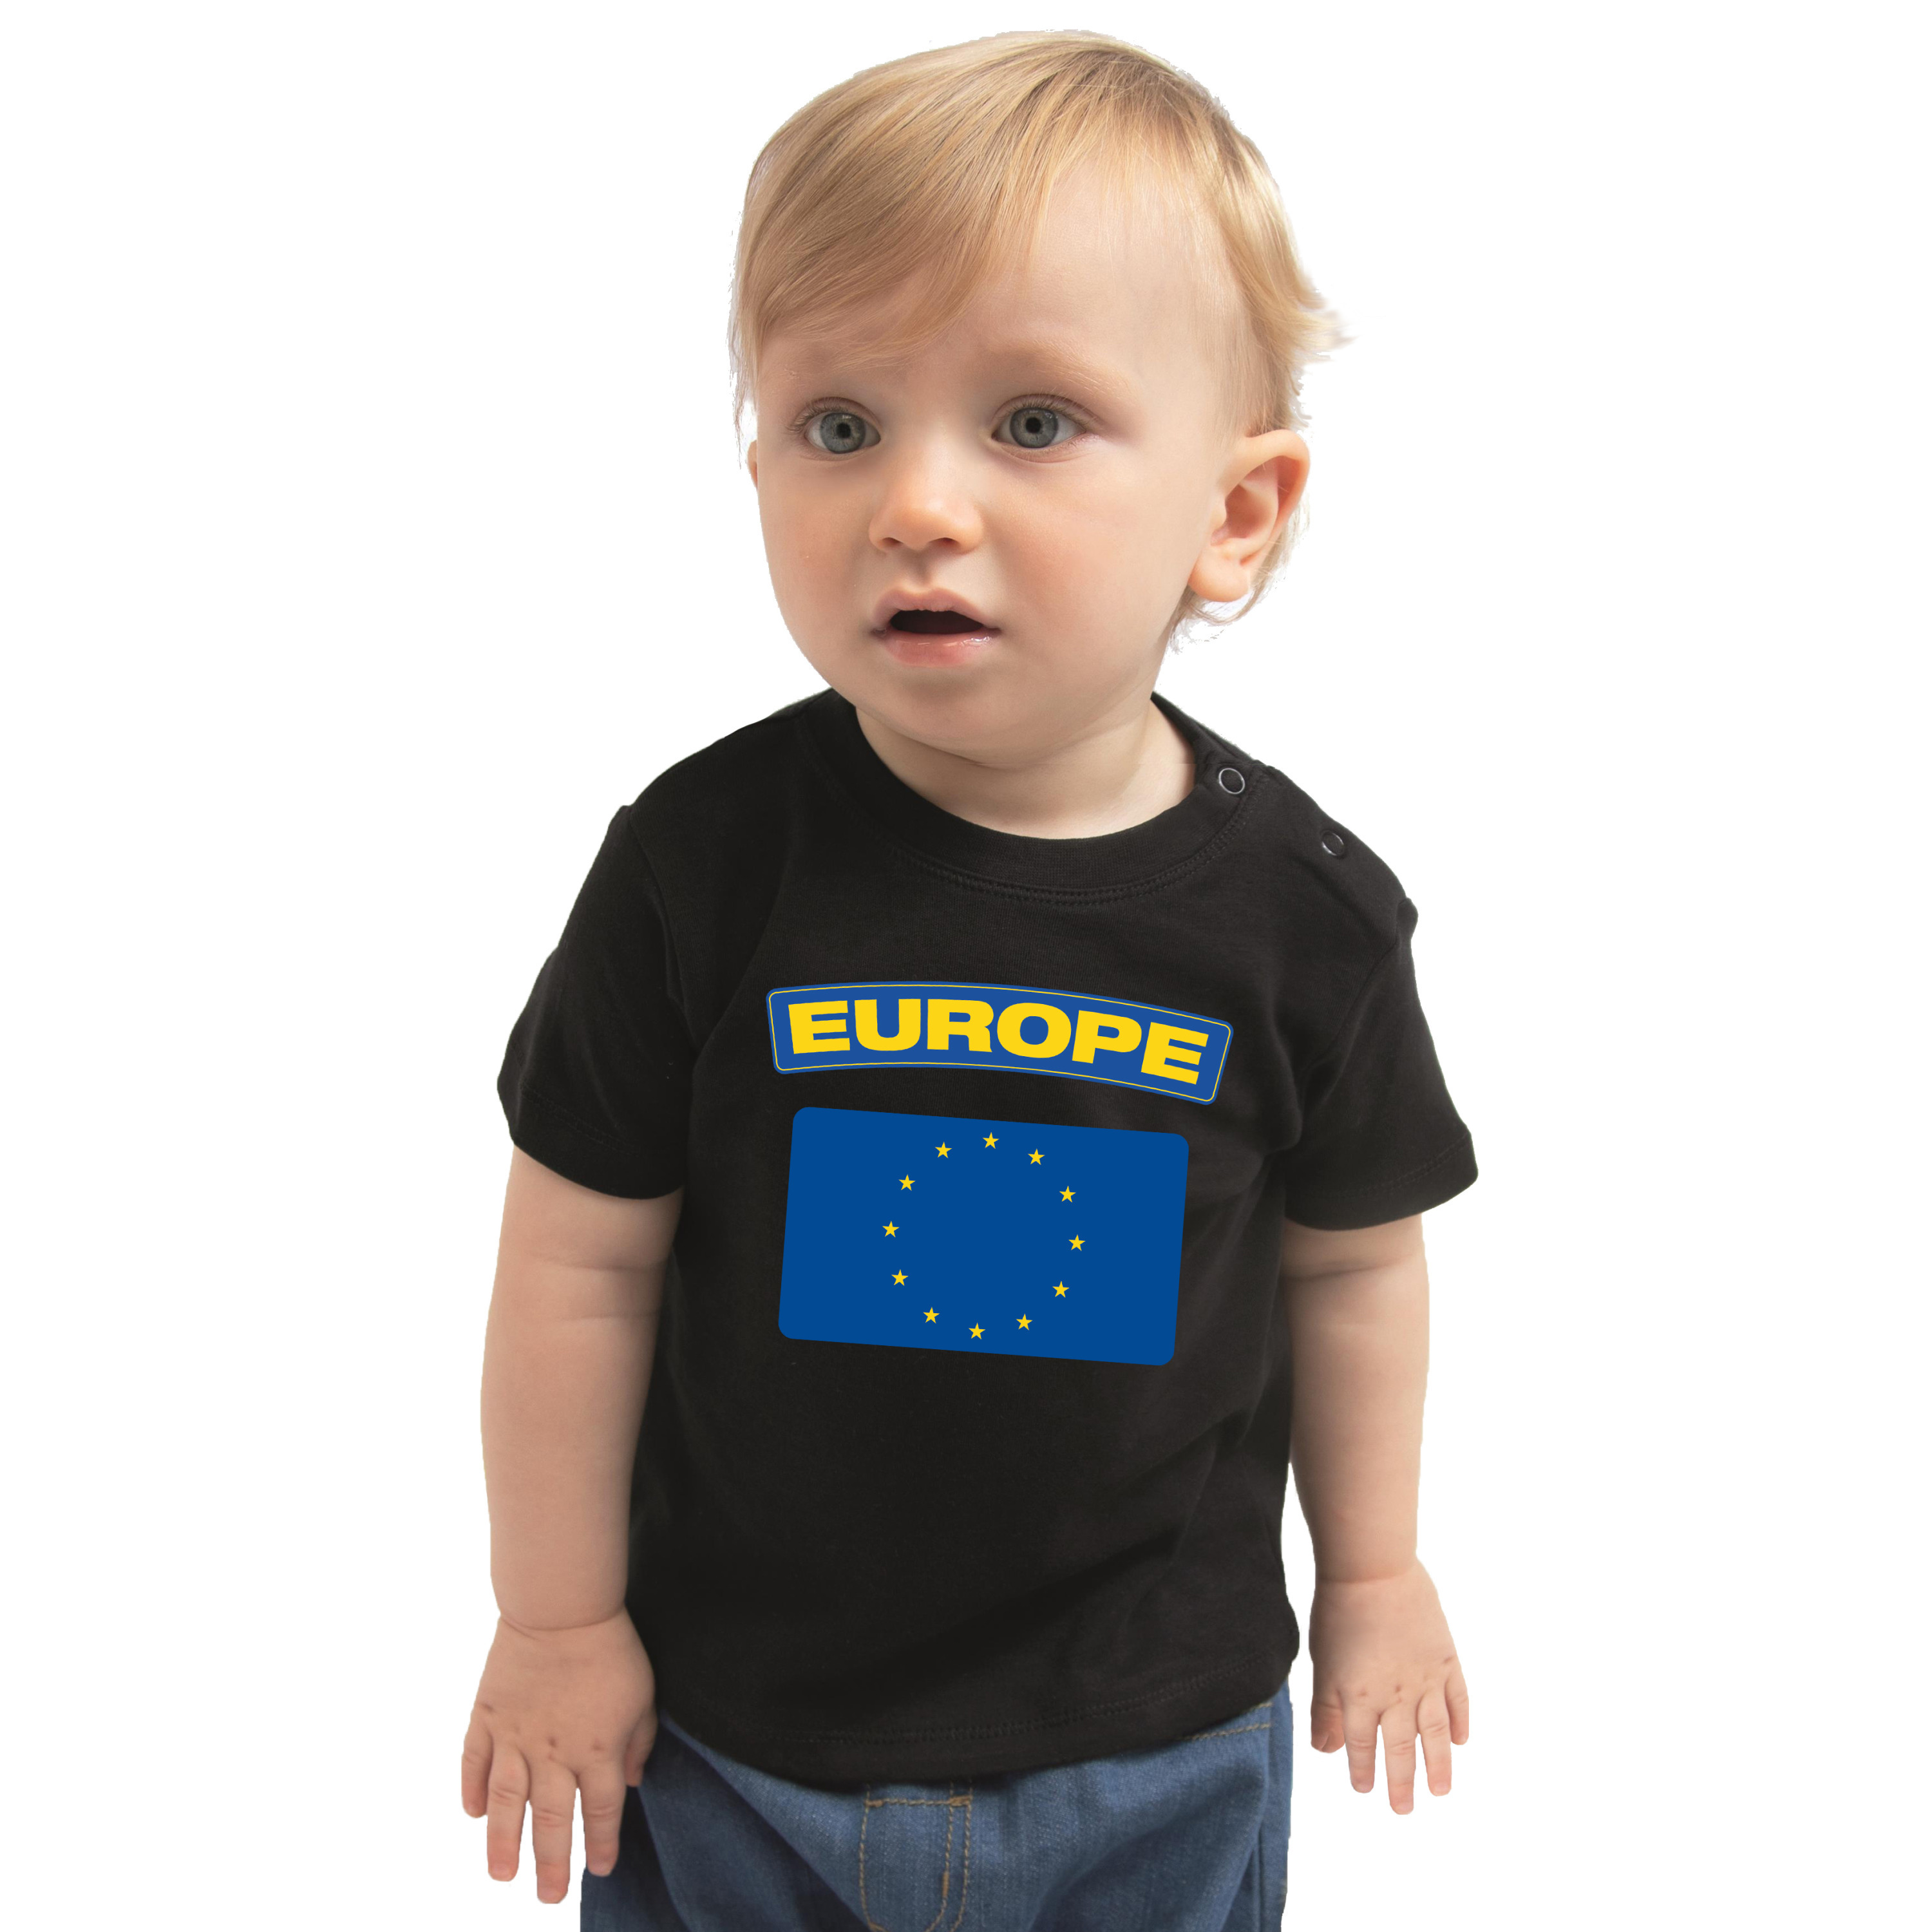 Europe-Europa landen shirtje met vlag zwart voor babys